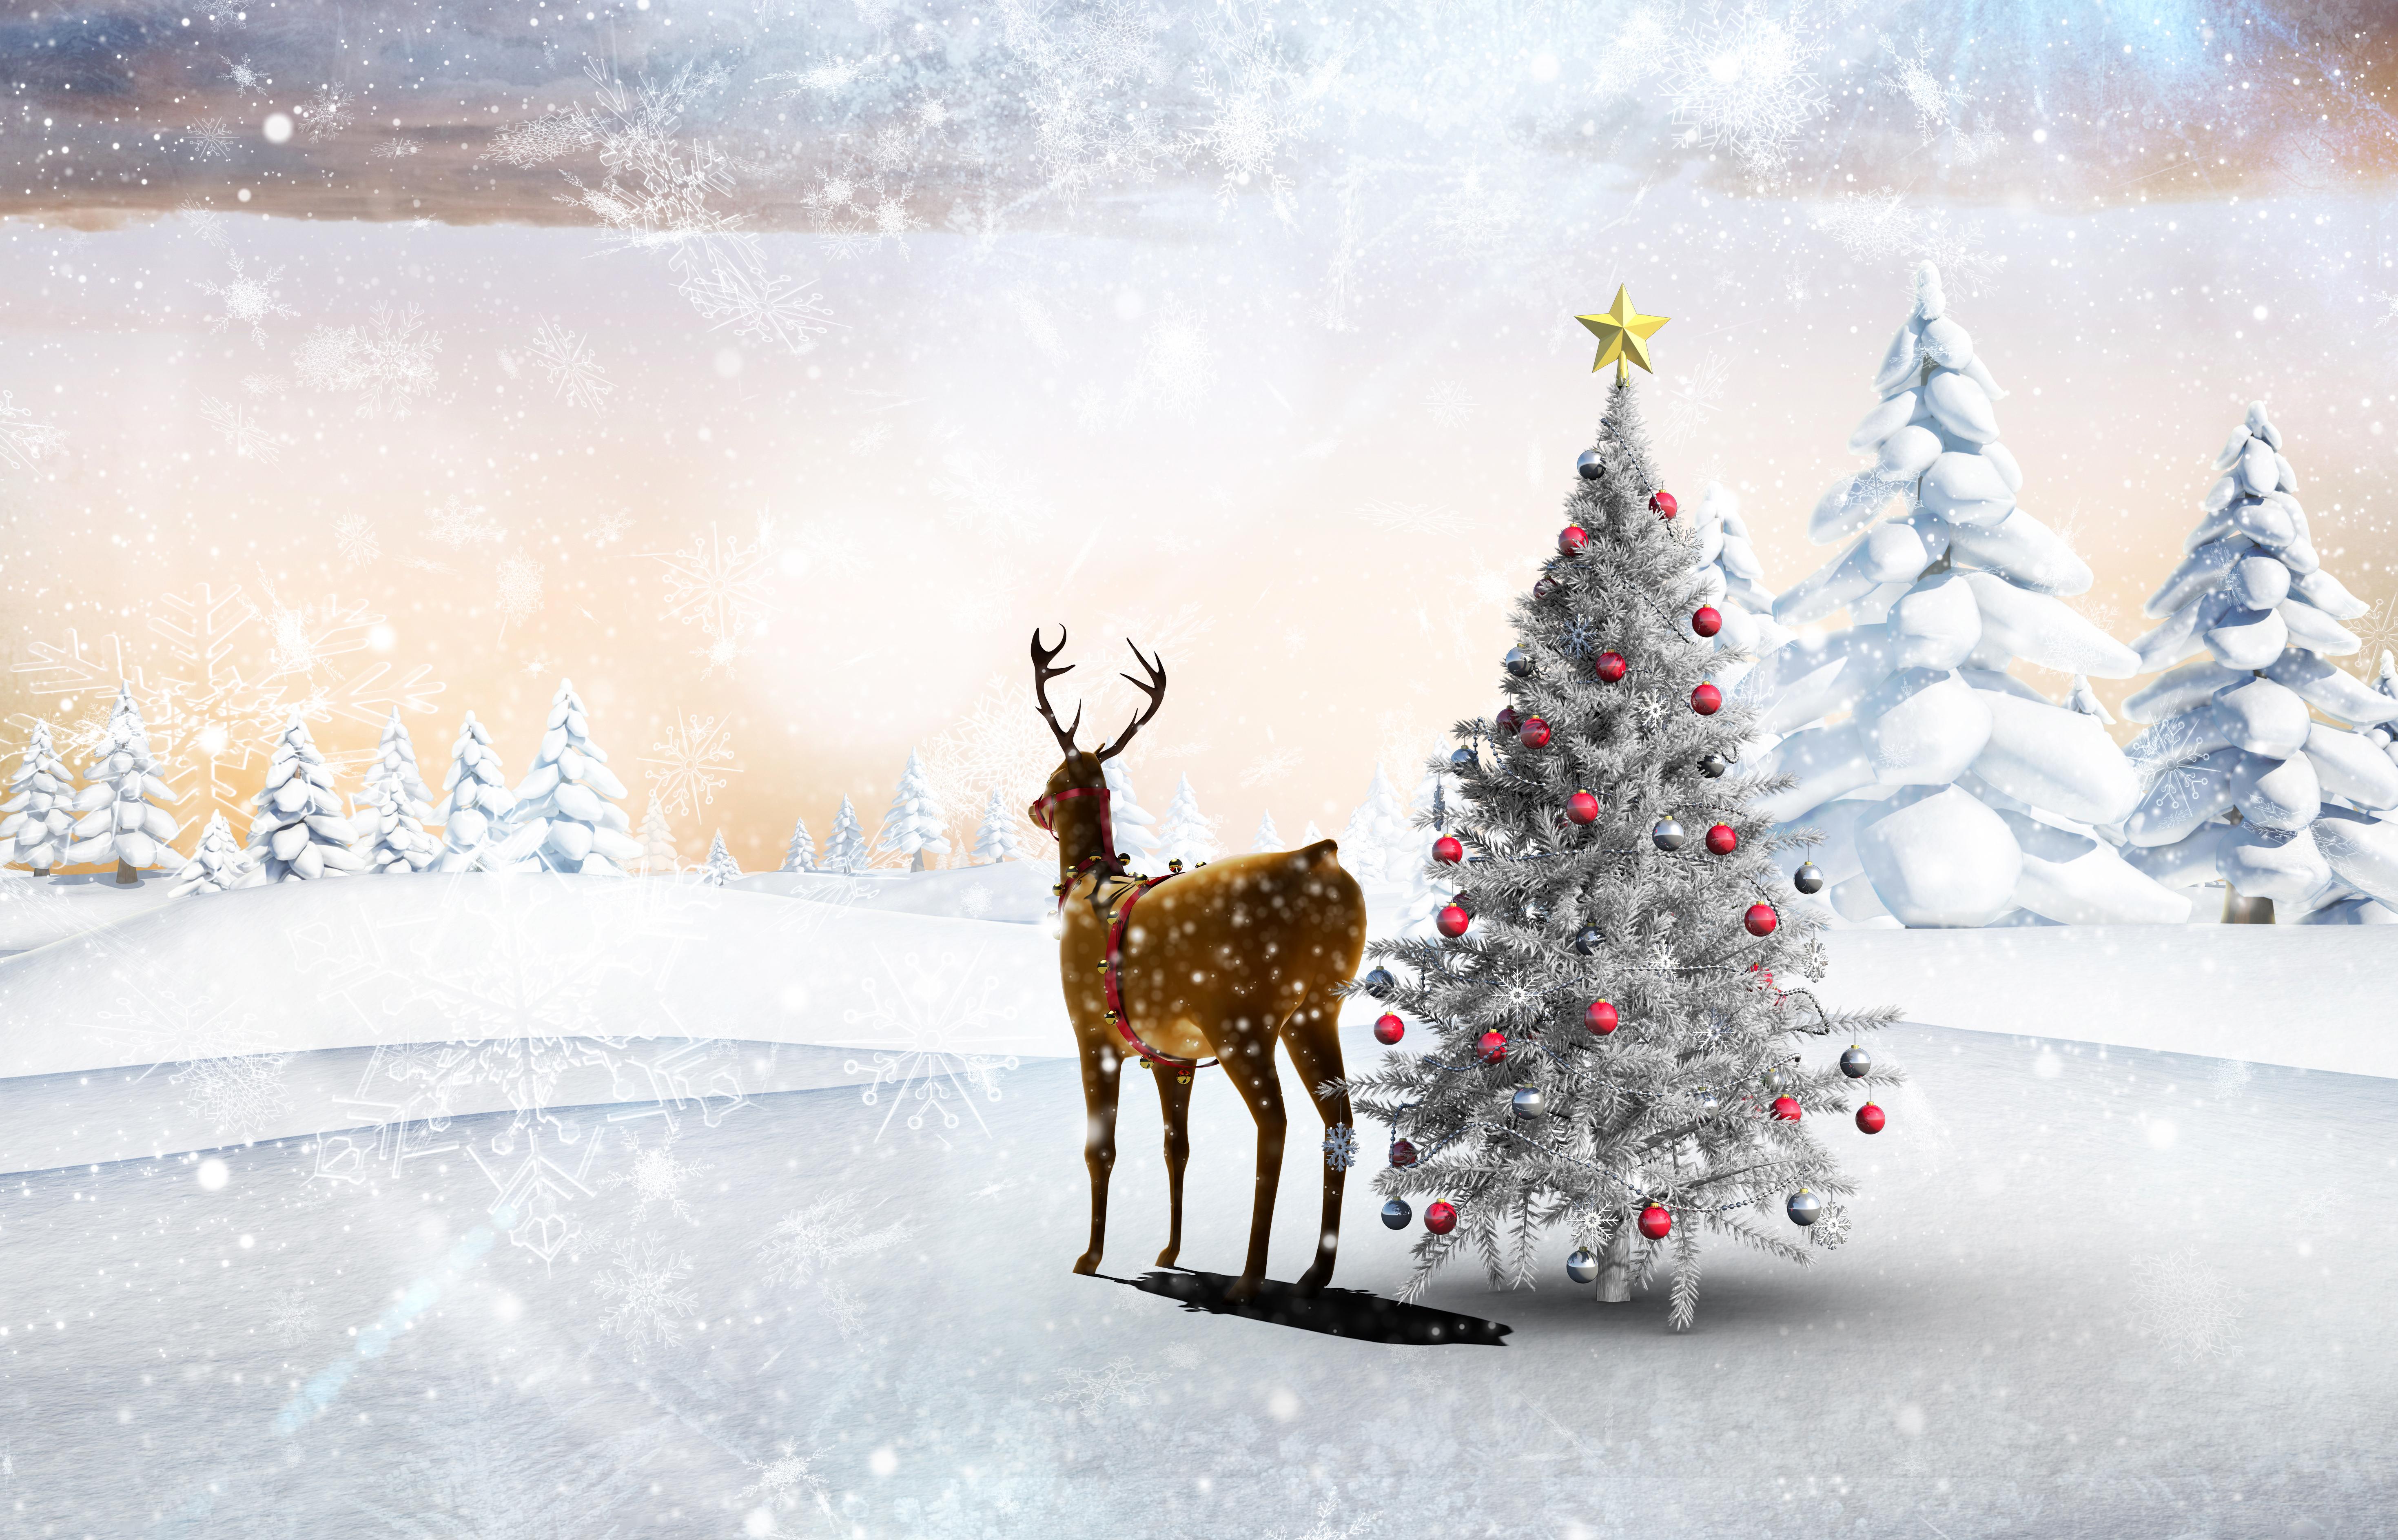 Обои на рабочий стол: Зима, Праздники, Рождество (Christmas Xmas), Новый Год  (New Year) - скачать картинку на ПК бесплатно № 14118